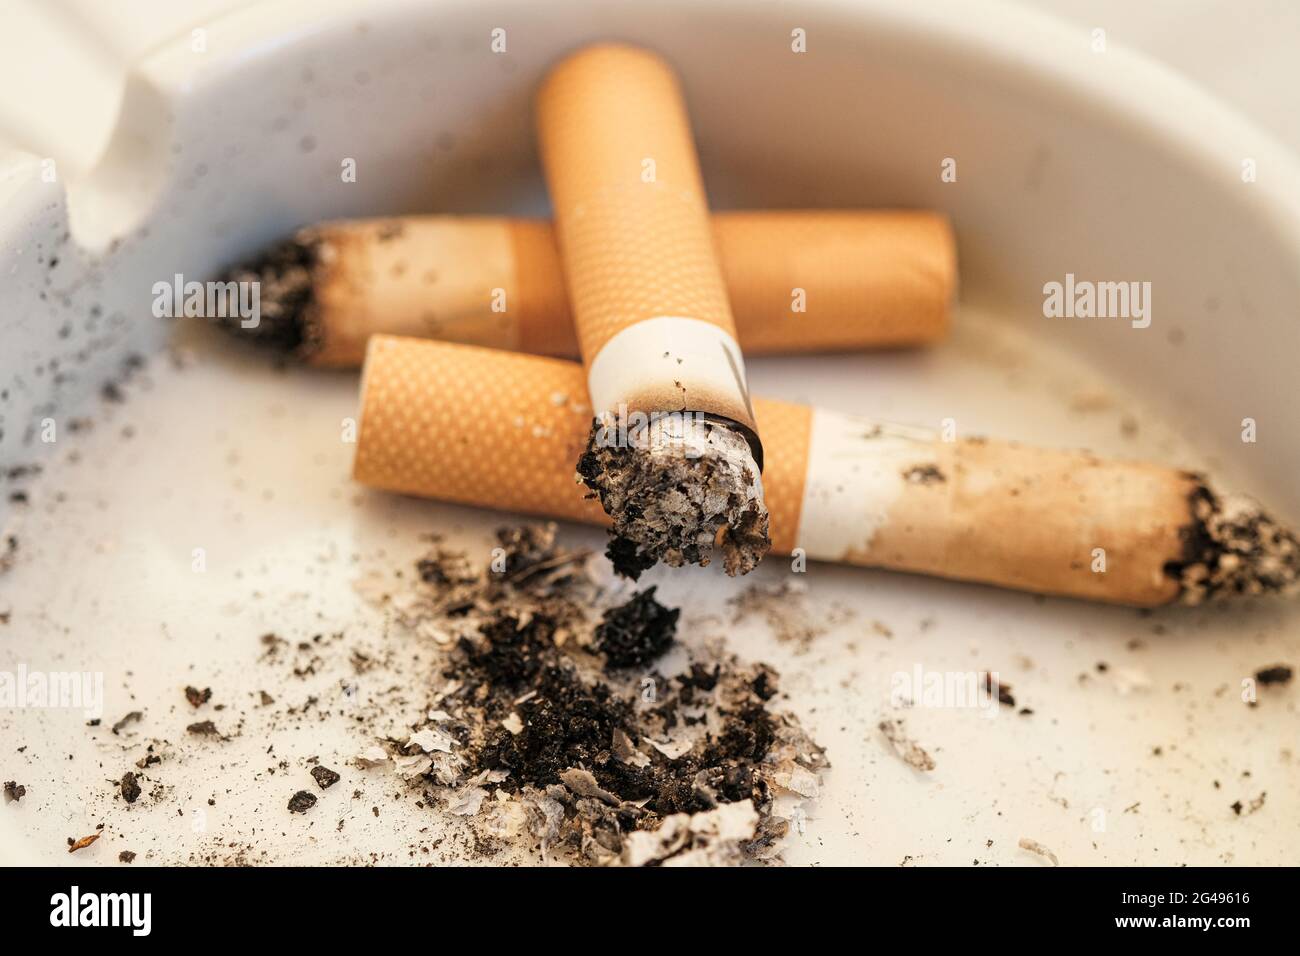 Bruciando i butt di sigaretta, lo spreco di tabacco, dipendenza di fumo, vita malsana Foto Stock